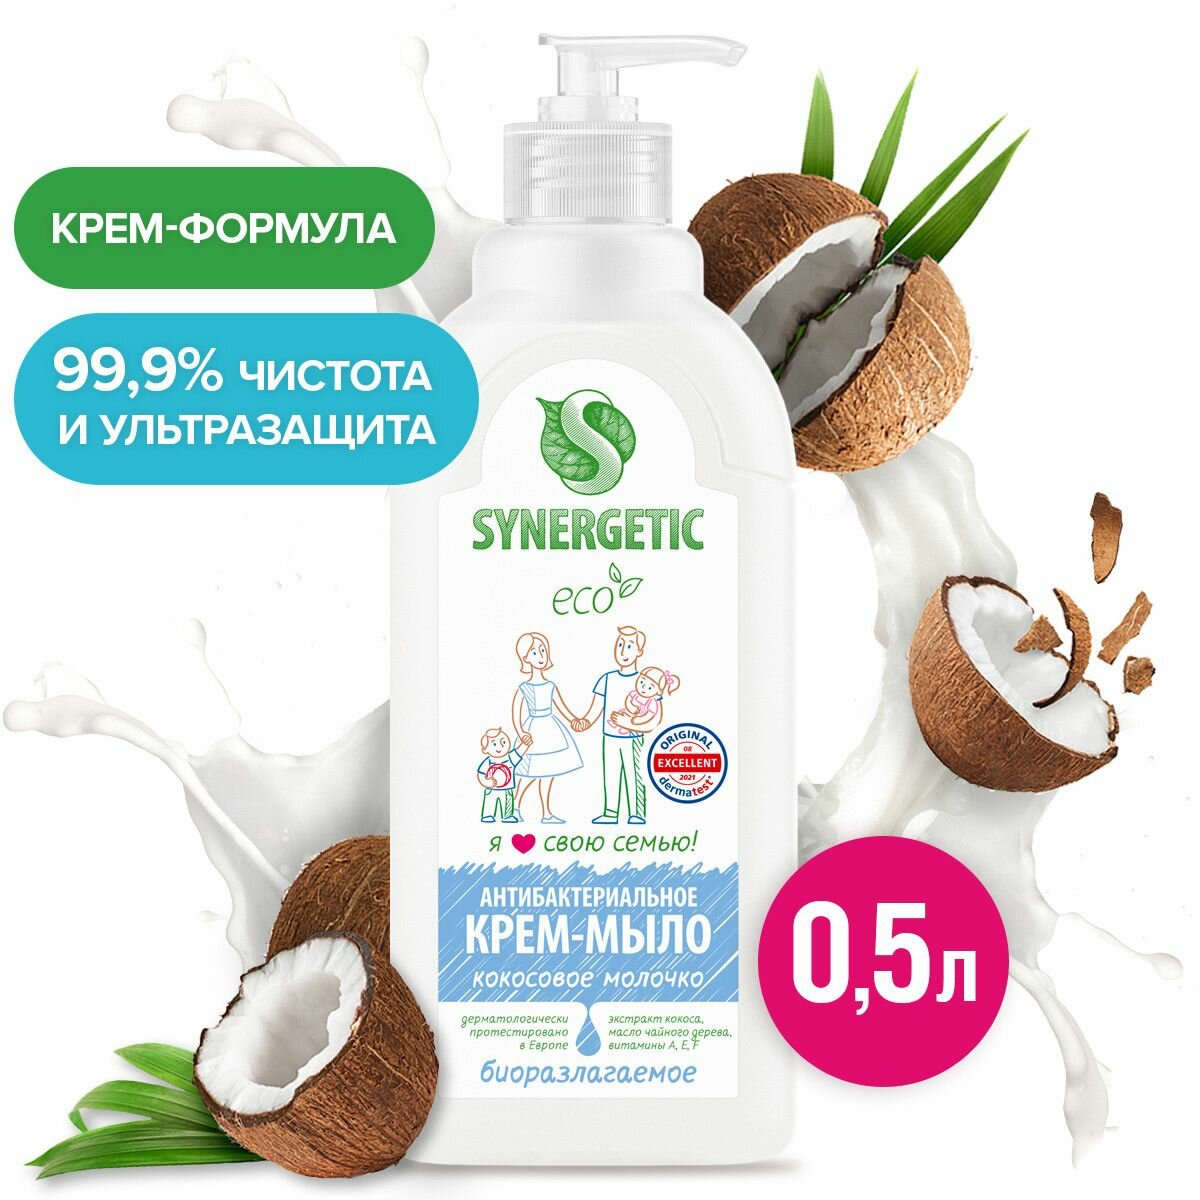 Жидкое антибактериальное Крем-мыло Кокосовое молочко Synergetic, 0,5л